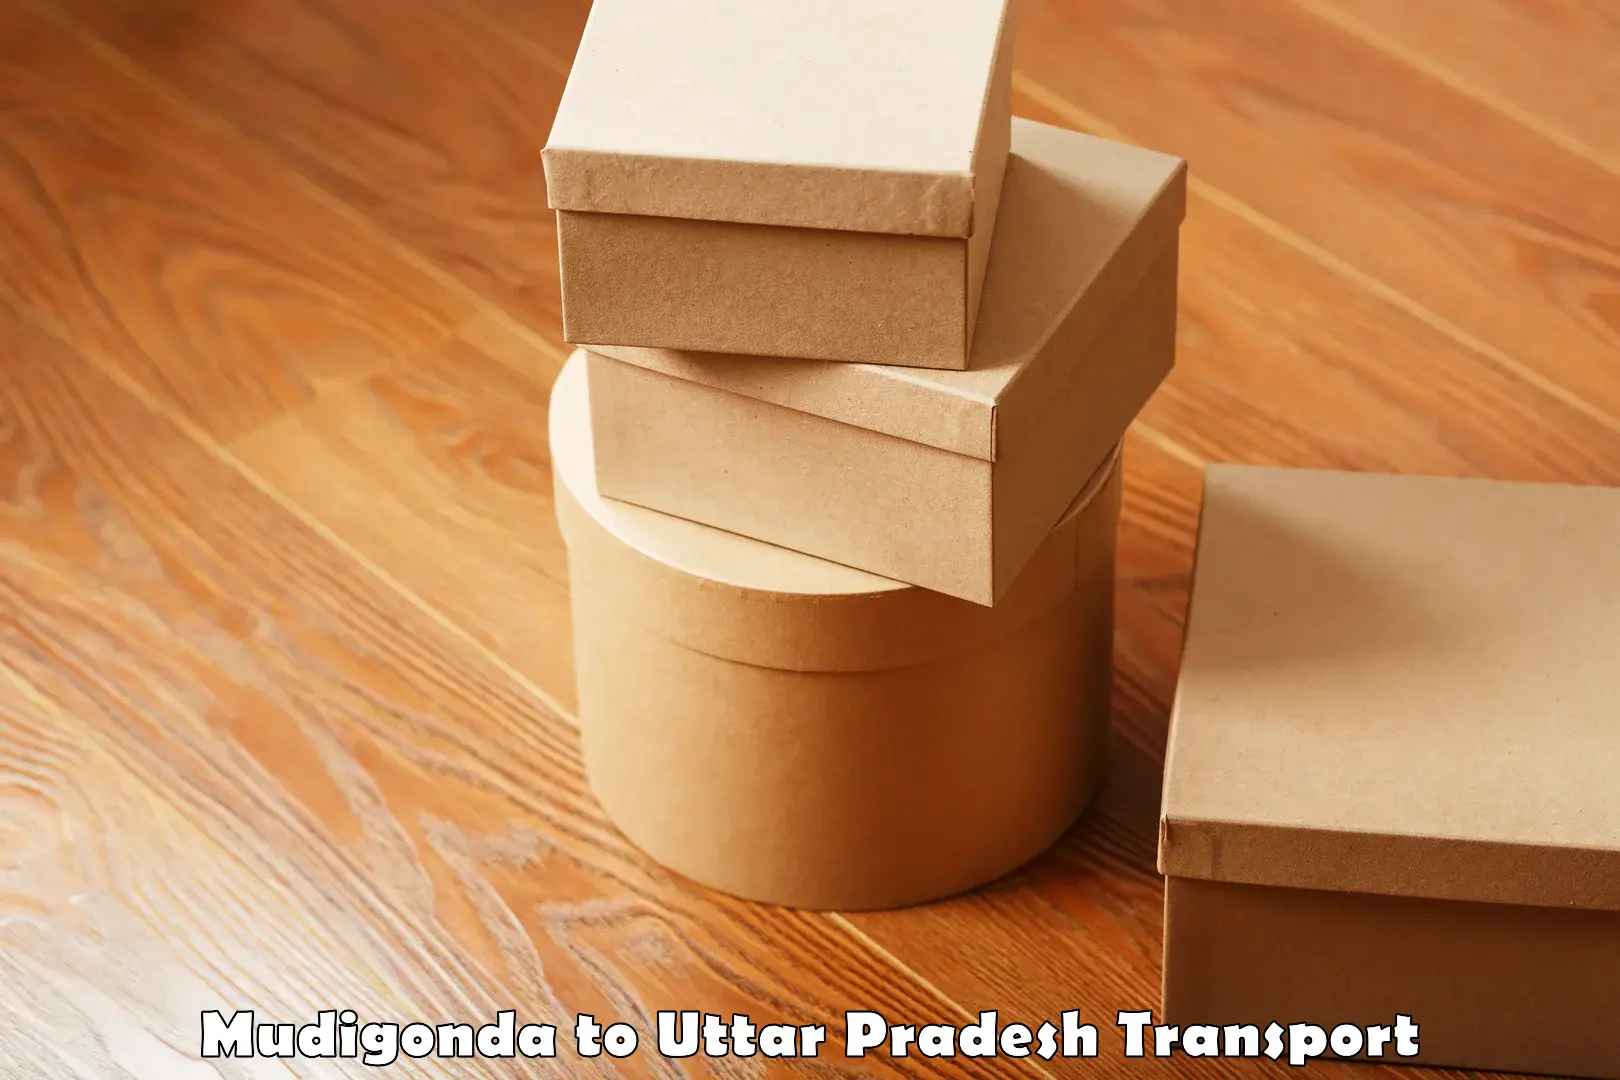 Goods delivery service Mudigonda to Uttar Pradesh